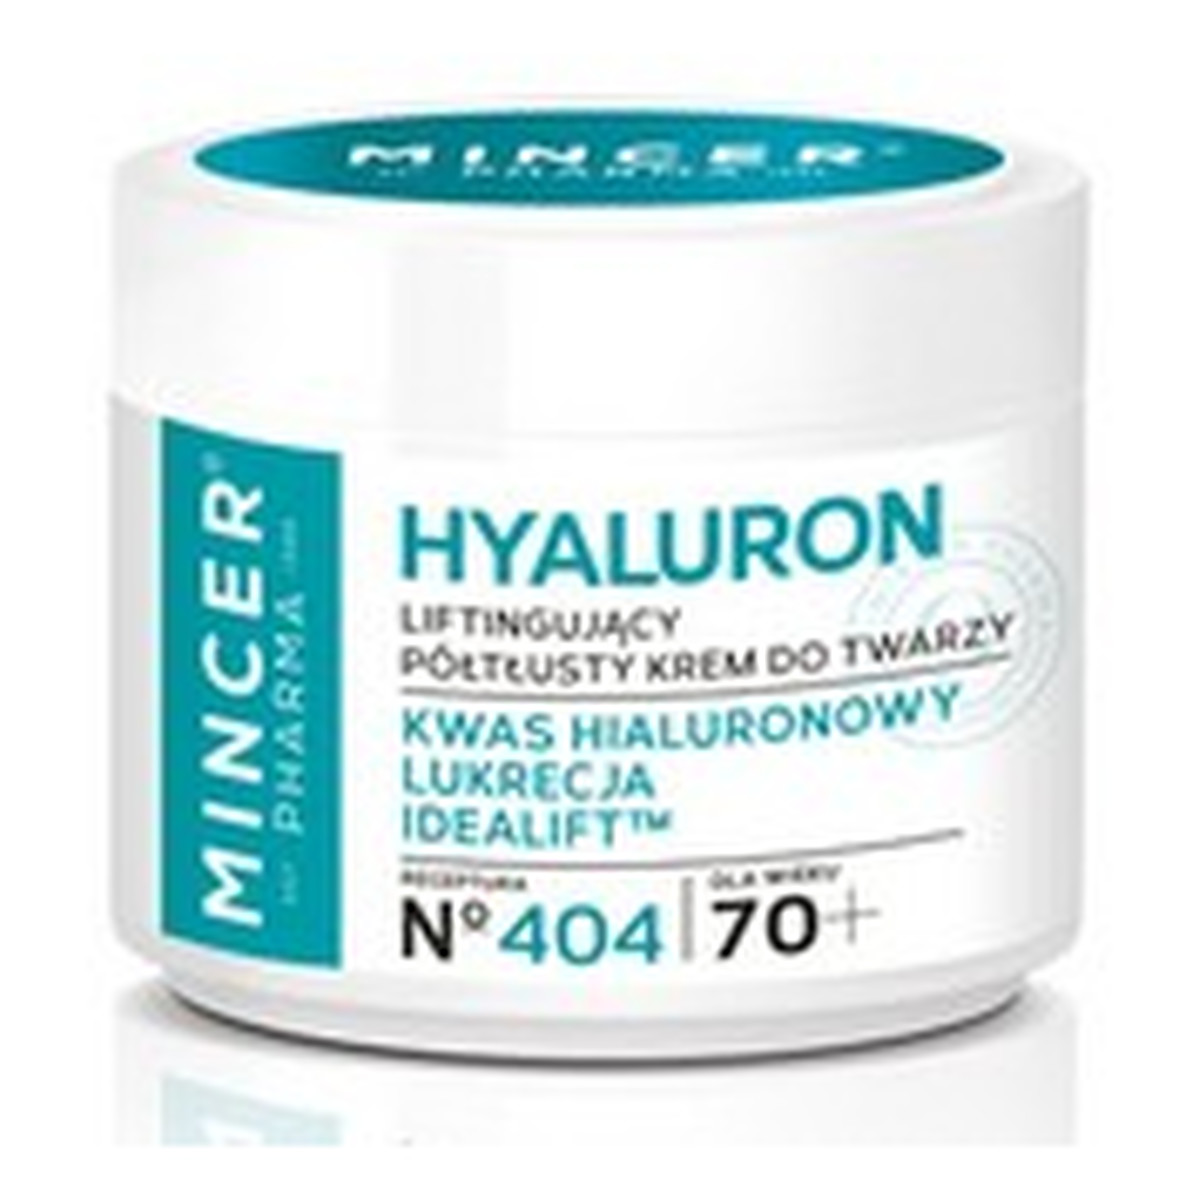 Mincer Pharma Hyaluron 70+ Liftingujący Krem Do Twarzy No404 50ml